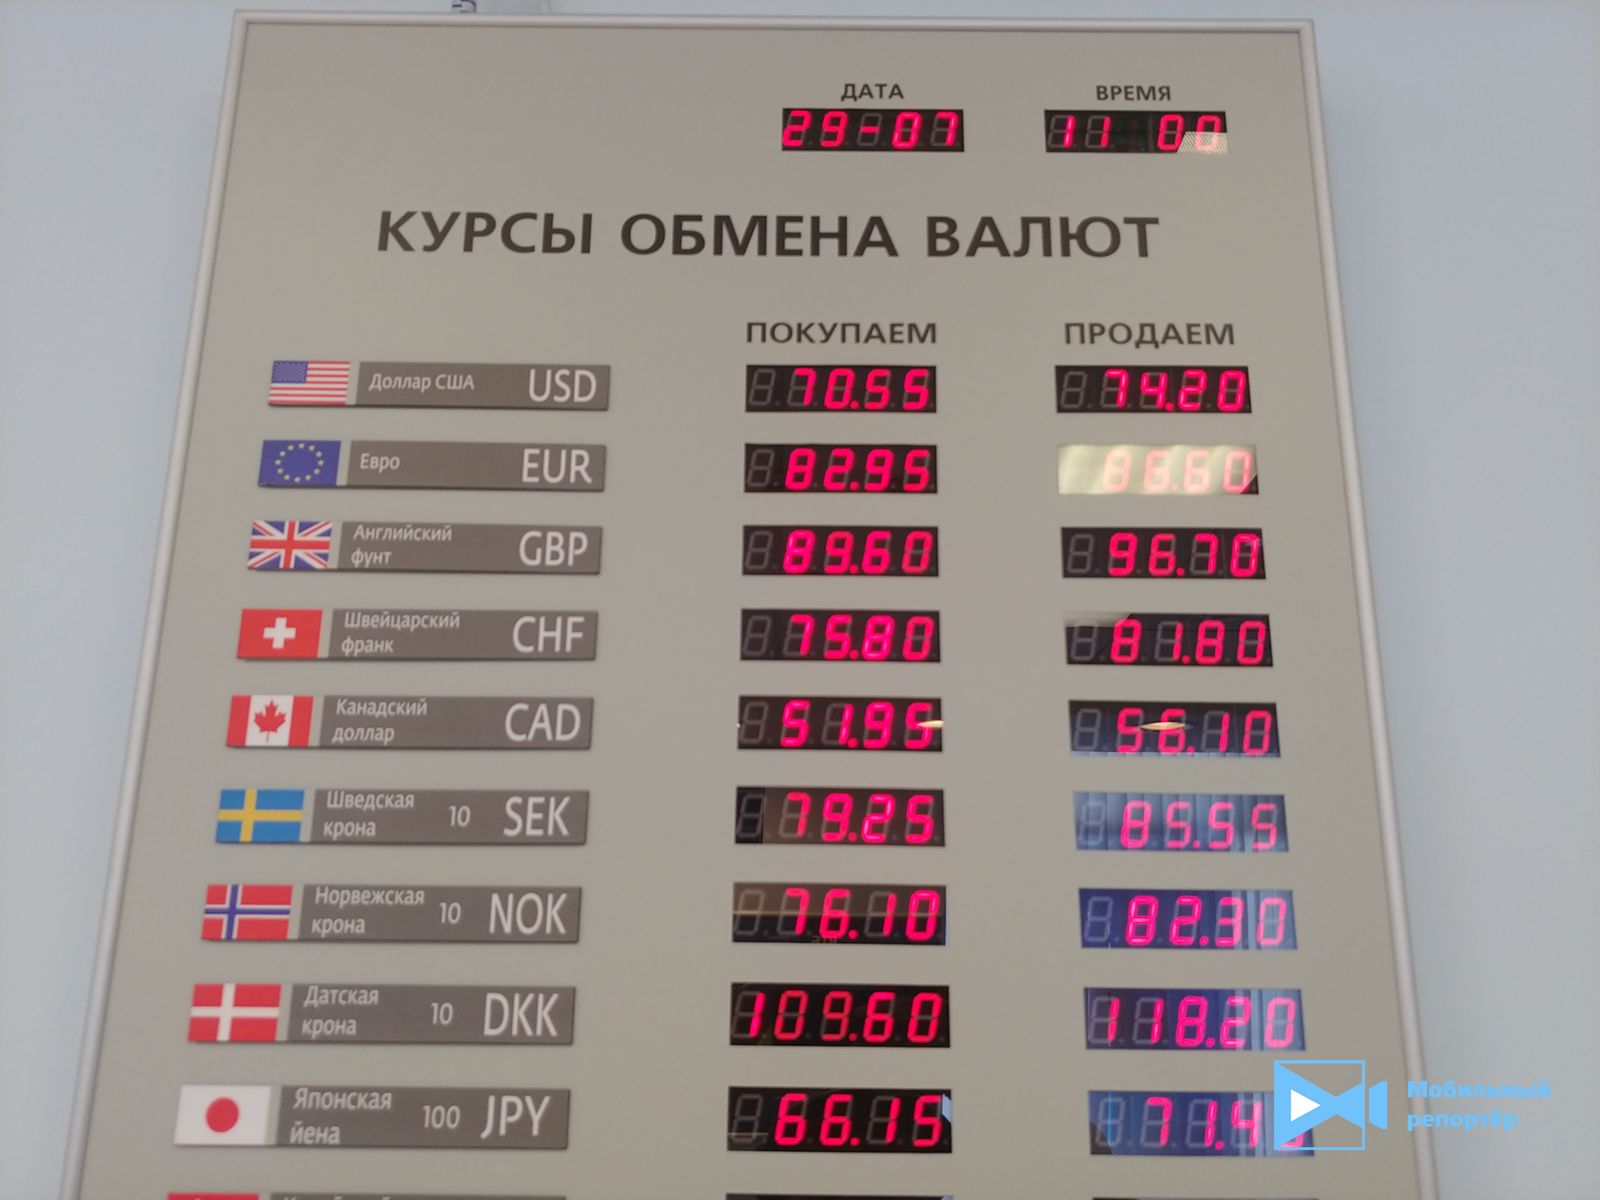 Курсы обмена валют фунты москва петербург обмен валюты курс